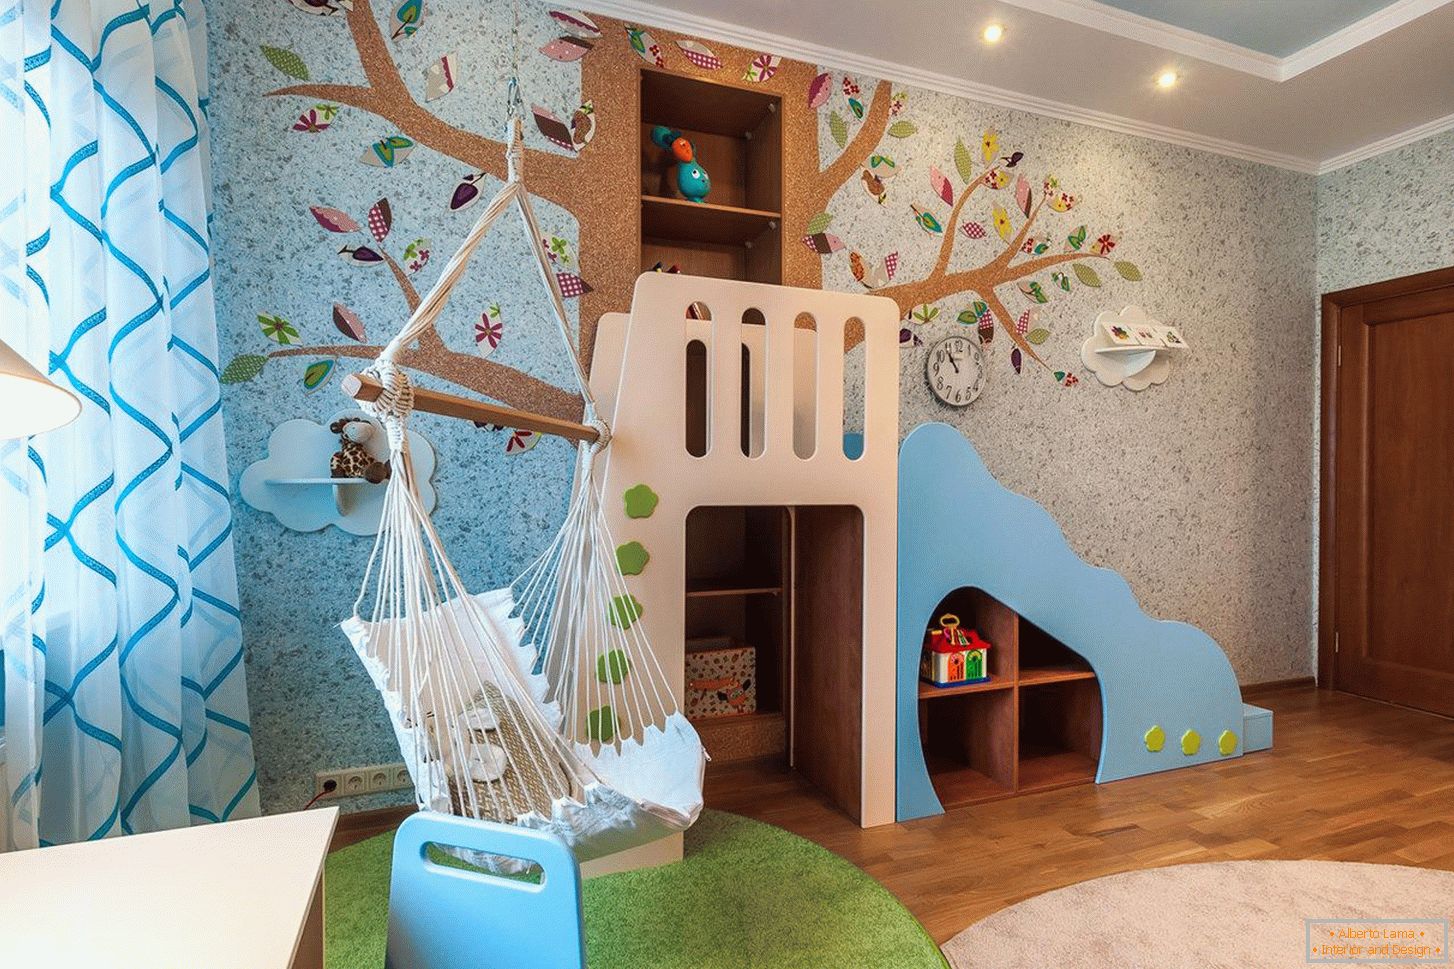 Oblikovanje sten v otroški sobi